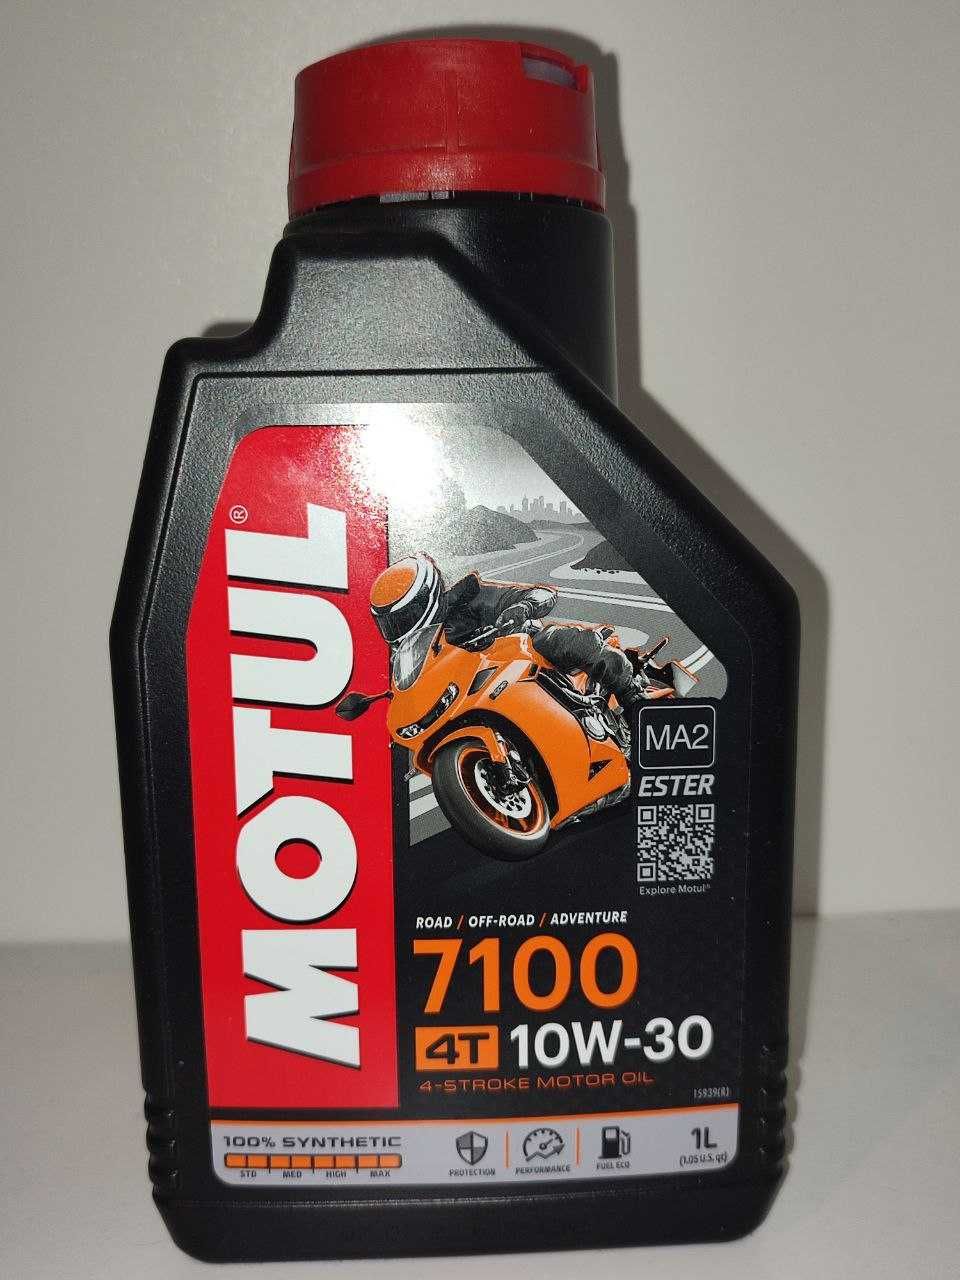 Продам моторное масло для бензогенератора Motul 4T 10w30 1л